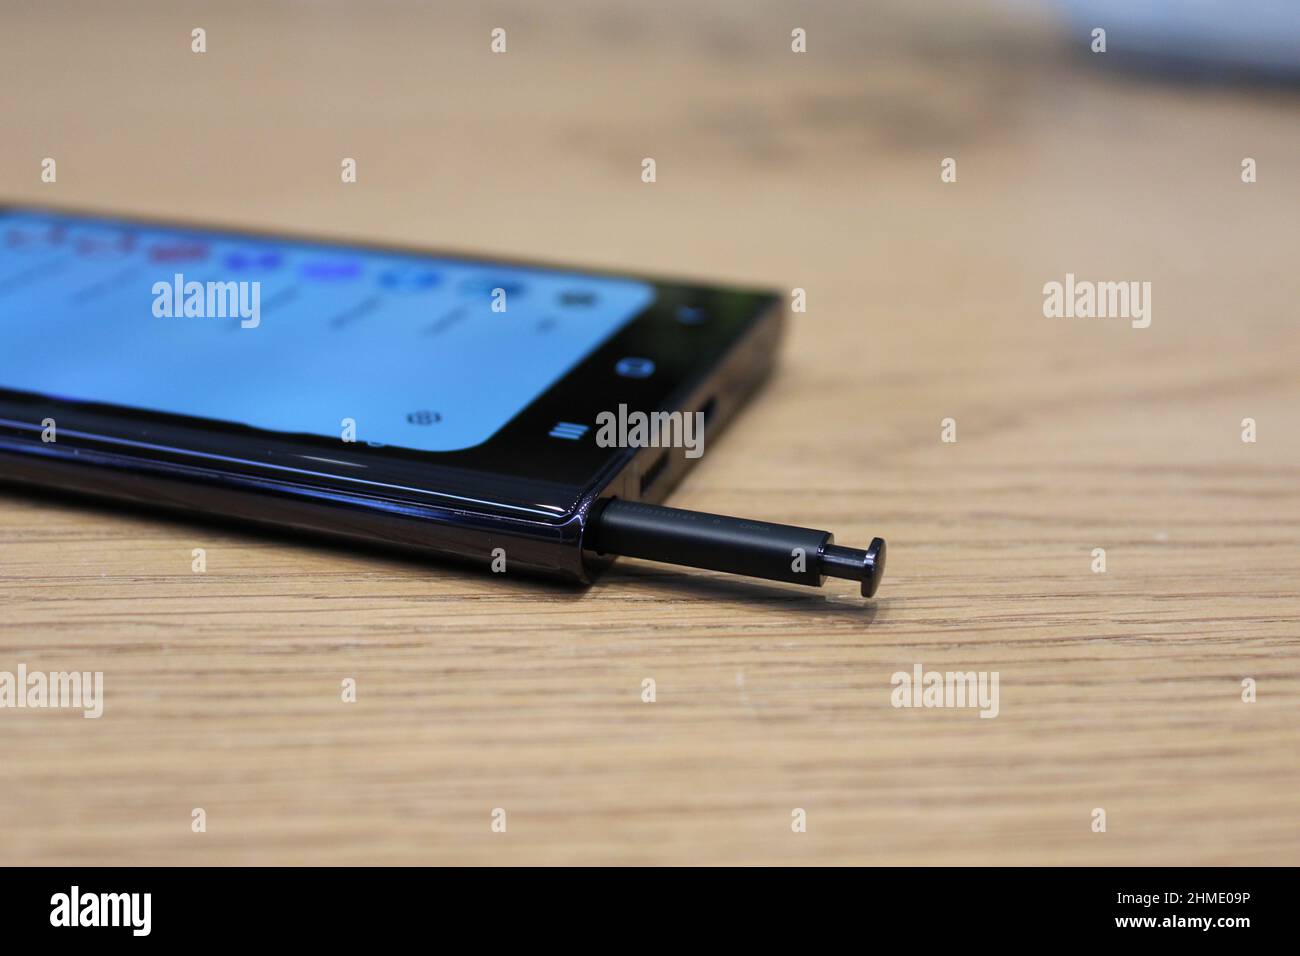 Il nuovo Samsung Galaxy S22 Ultra, una delle nuove serie di telefoni svelati dalla società. Data foto: Mercoledì 9 febbraio 2022. Foto Stock